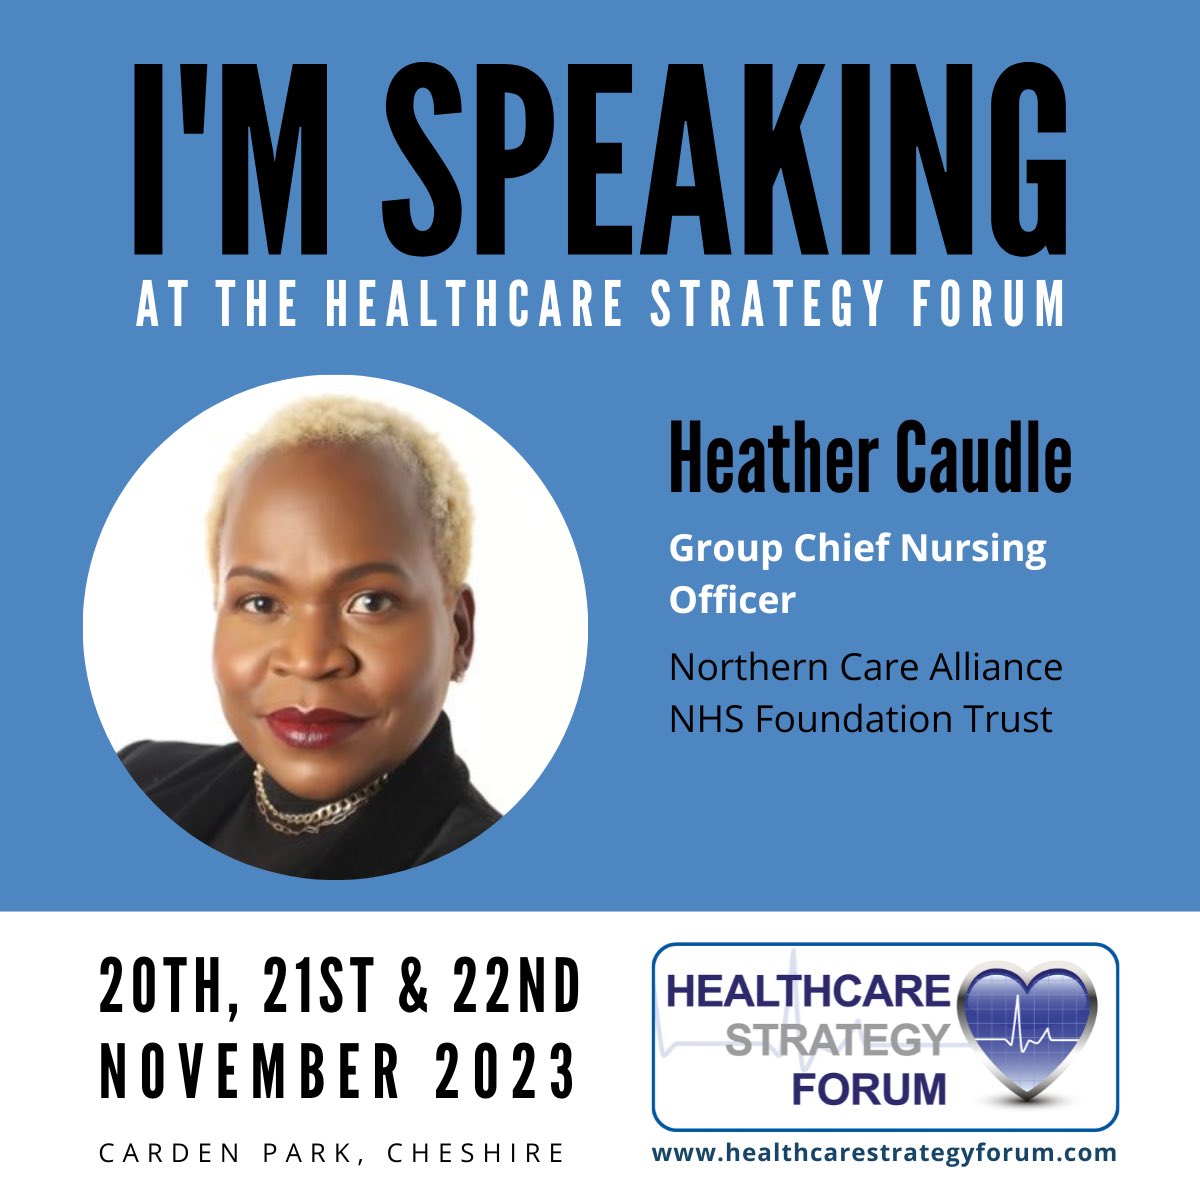 I’m looking forward to speaking @HStrategyForum this week. #HealthcareSF